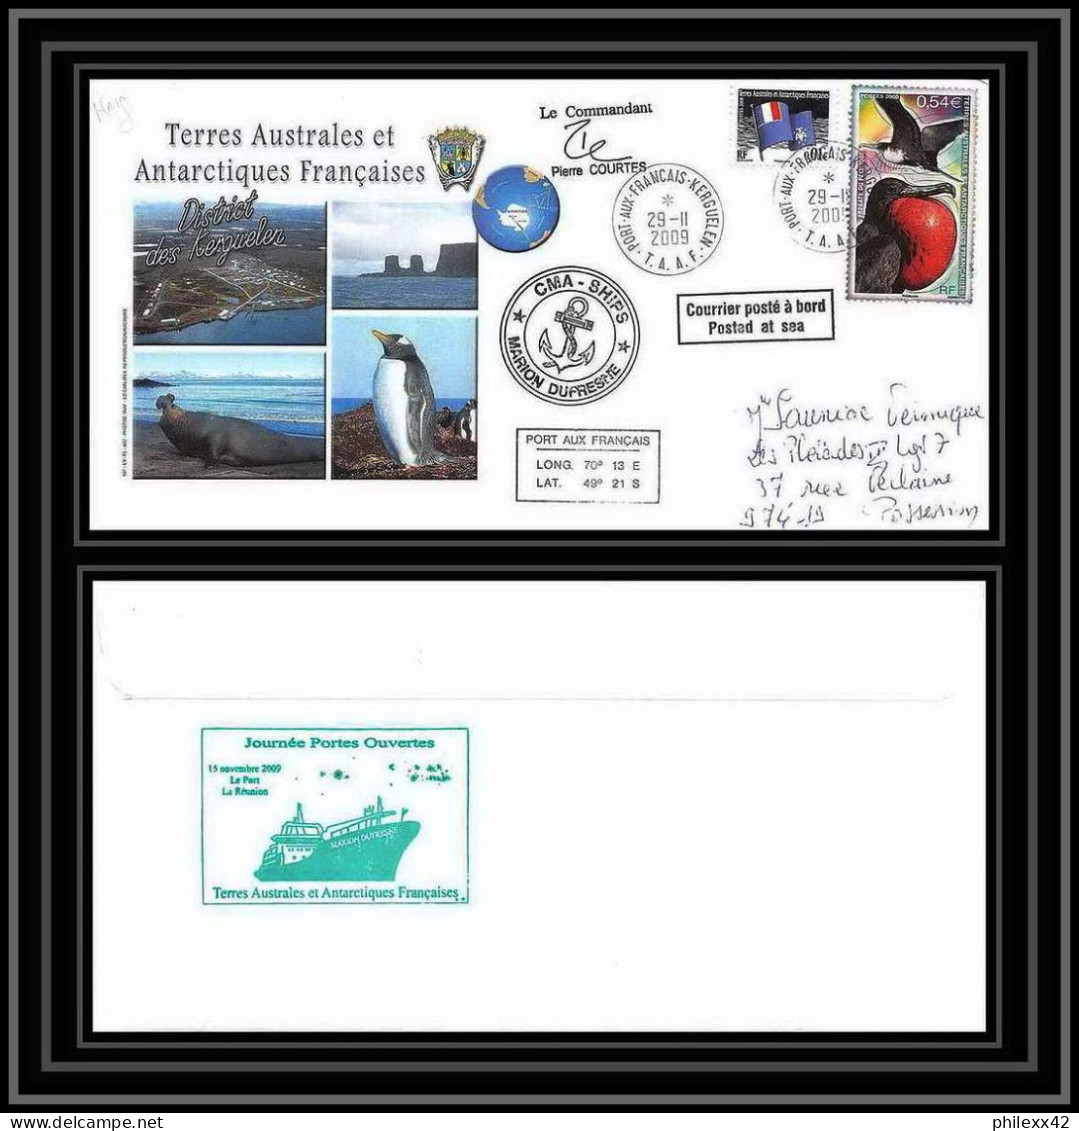 2959 Terres Australes TAAF Lettre Dufresne Signé Signed Kerguelen Portes Ouvertes 29/11/2009 N°517 Fregate Bird - Storia Postale